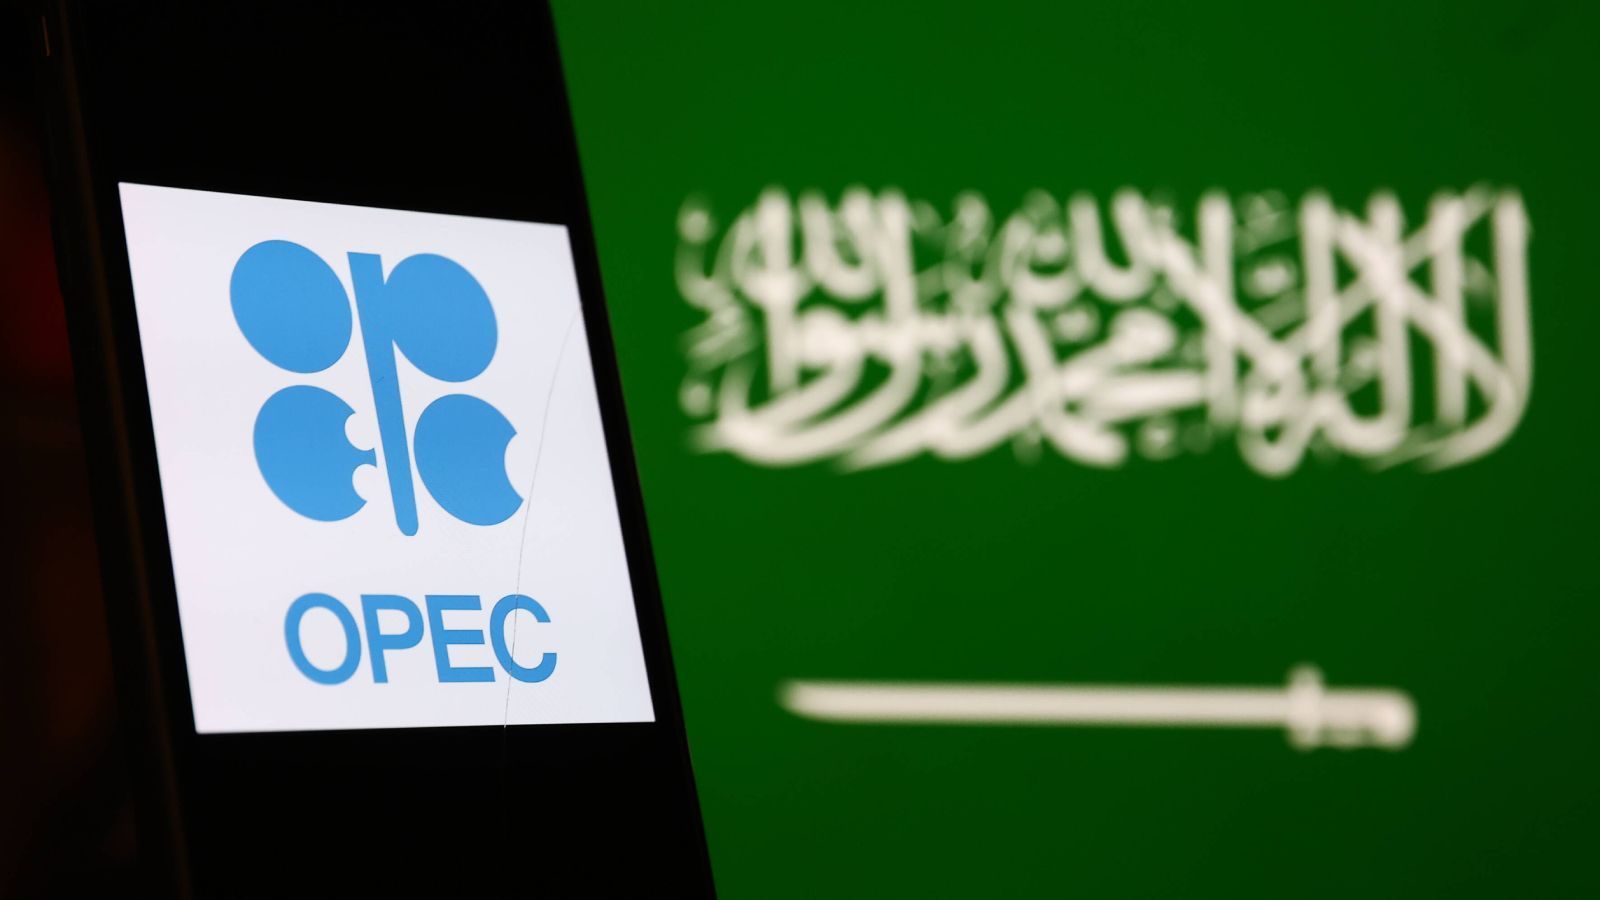 
                <strong>Saudi-Arabien: Woher kommt das Geld?</strong><br>
                Saudi-Arabien ist einer der wichtigsten Produzenten von Erdöl und Erdgas und Mitglied der OPEC - einer Organisation, die 1960 vom Iran, Irak, Kuwait, Venezuela und eben Saudi-Arabien mit dem Ziel gegründet wurde, mehr Gewinn für die Exporteure von Erdöl zu erzielen und die Preise für Rohöl auf hohem Niveau zu stabilisieren. Dadurch wurde das Land sehr reich. 2021 wurde das Bruttoinlandsprodukt Saudi-Arabiens auf rund 833,5 Milliarden US-Dollar geschätzt - umgerechnet etwa 777,8 Milliarden Euro. Das Vermögen der Königsfamilie betrug 2020 laut "Mirror" rund eine Billion Euro.
              